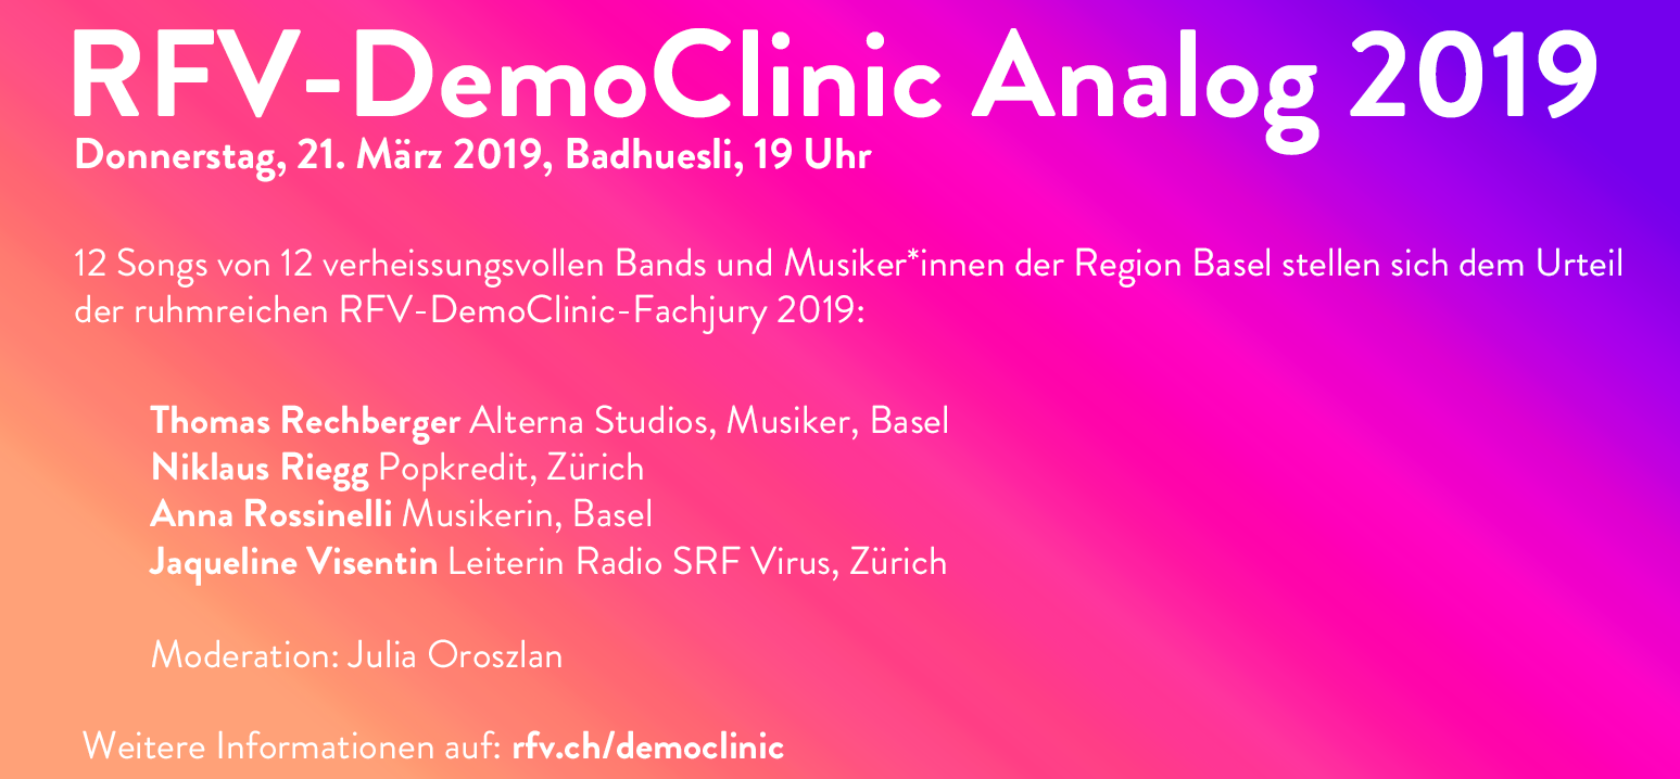 RFV-Democlinic Analog 2019 Banner klein